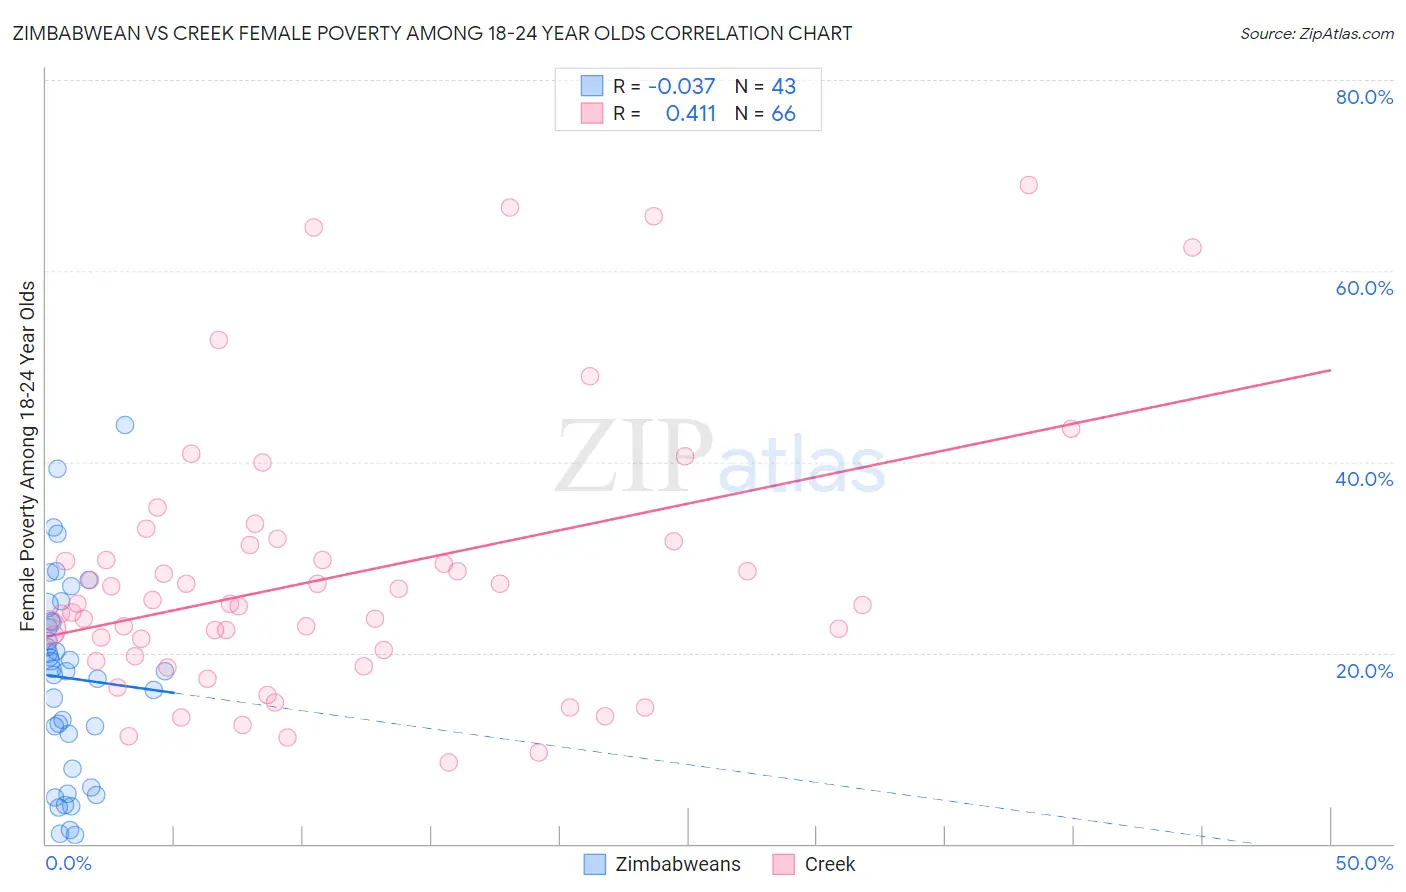 Zimbabwean vs Creek Female Poverty Among 18-24 Year Olds